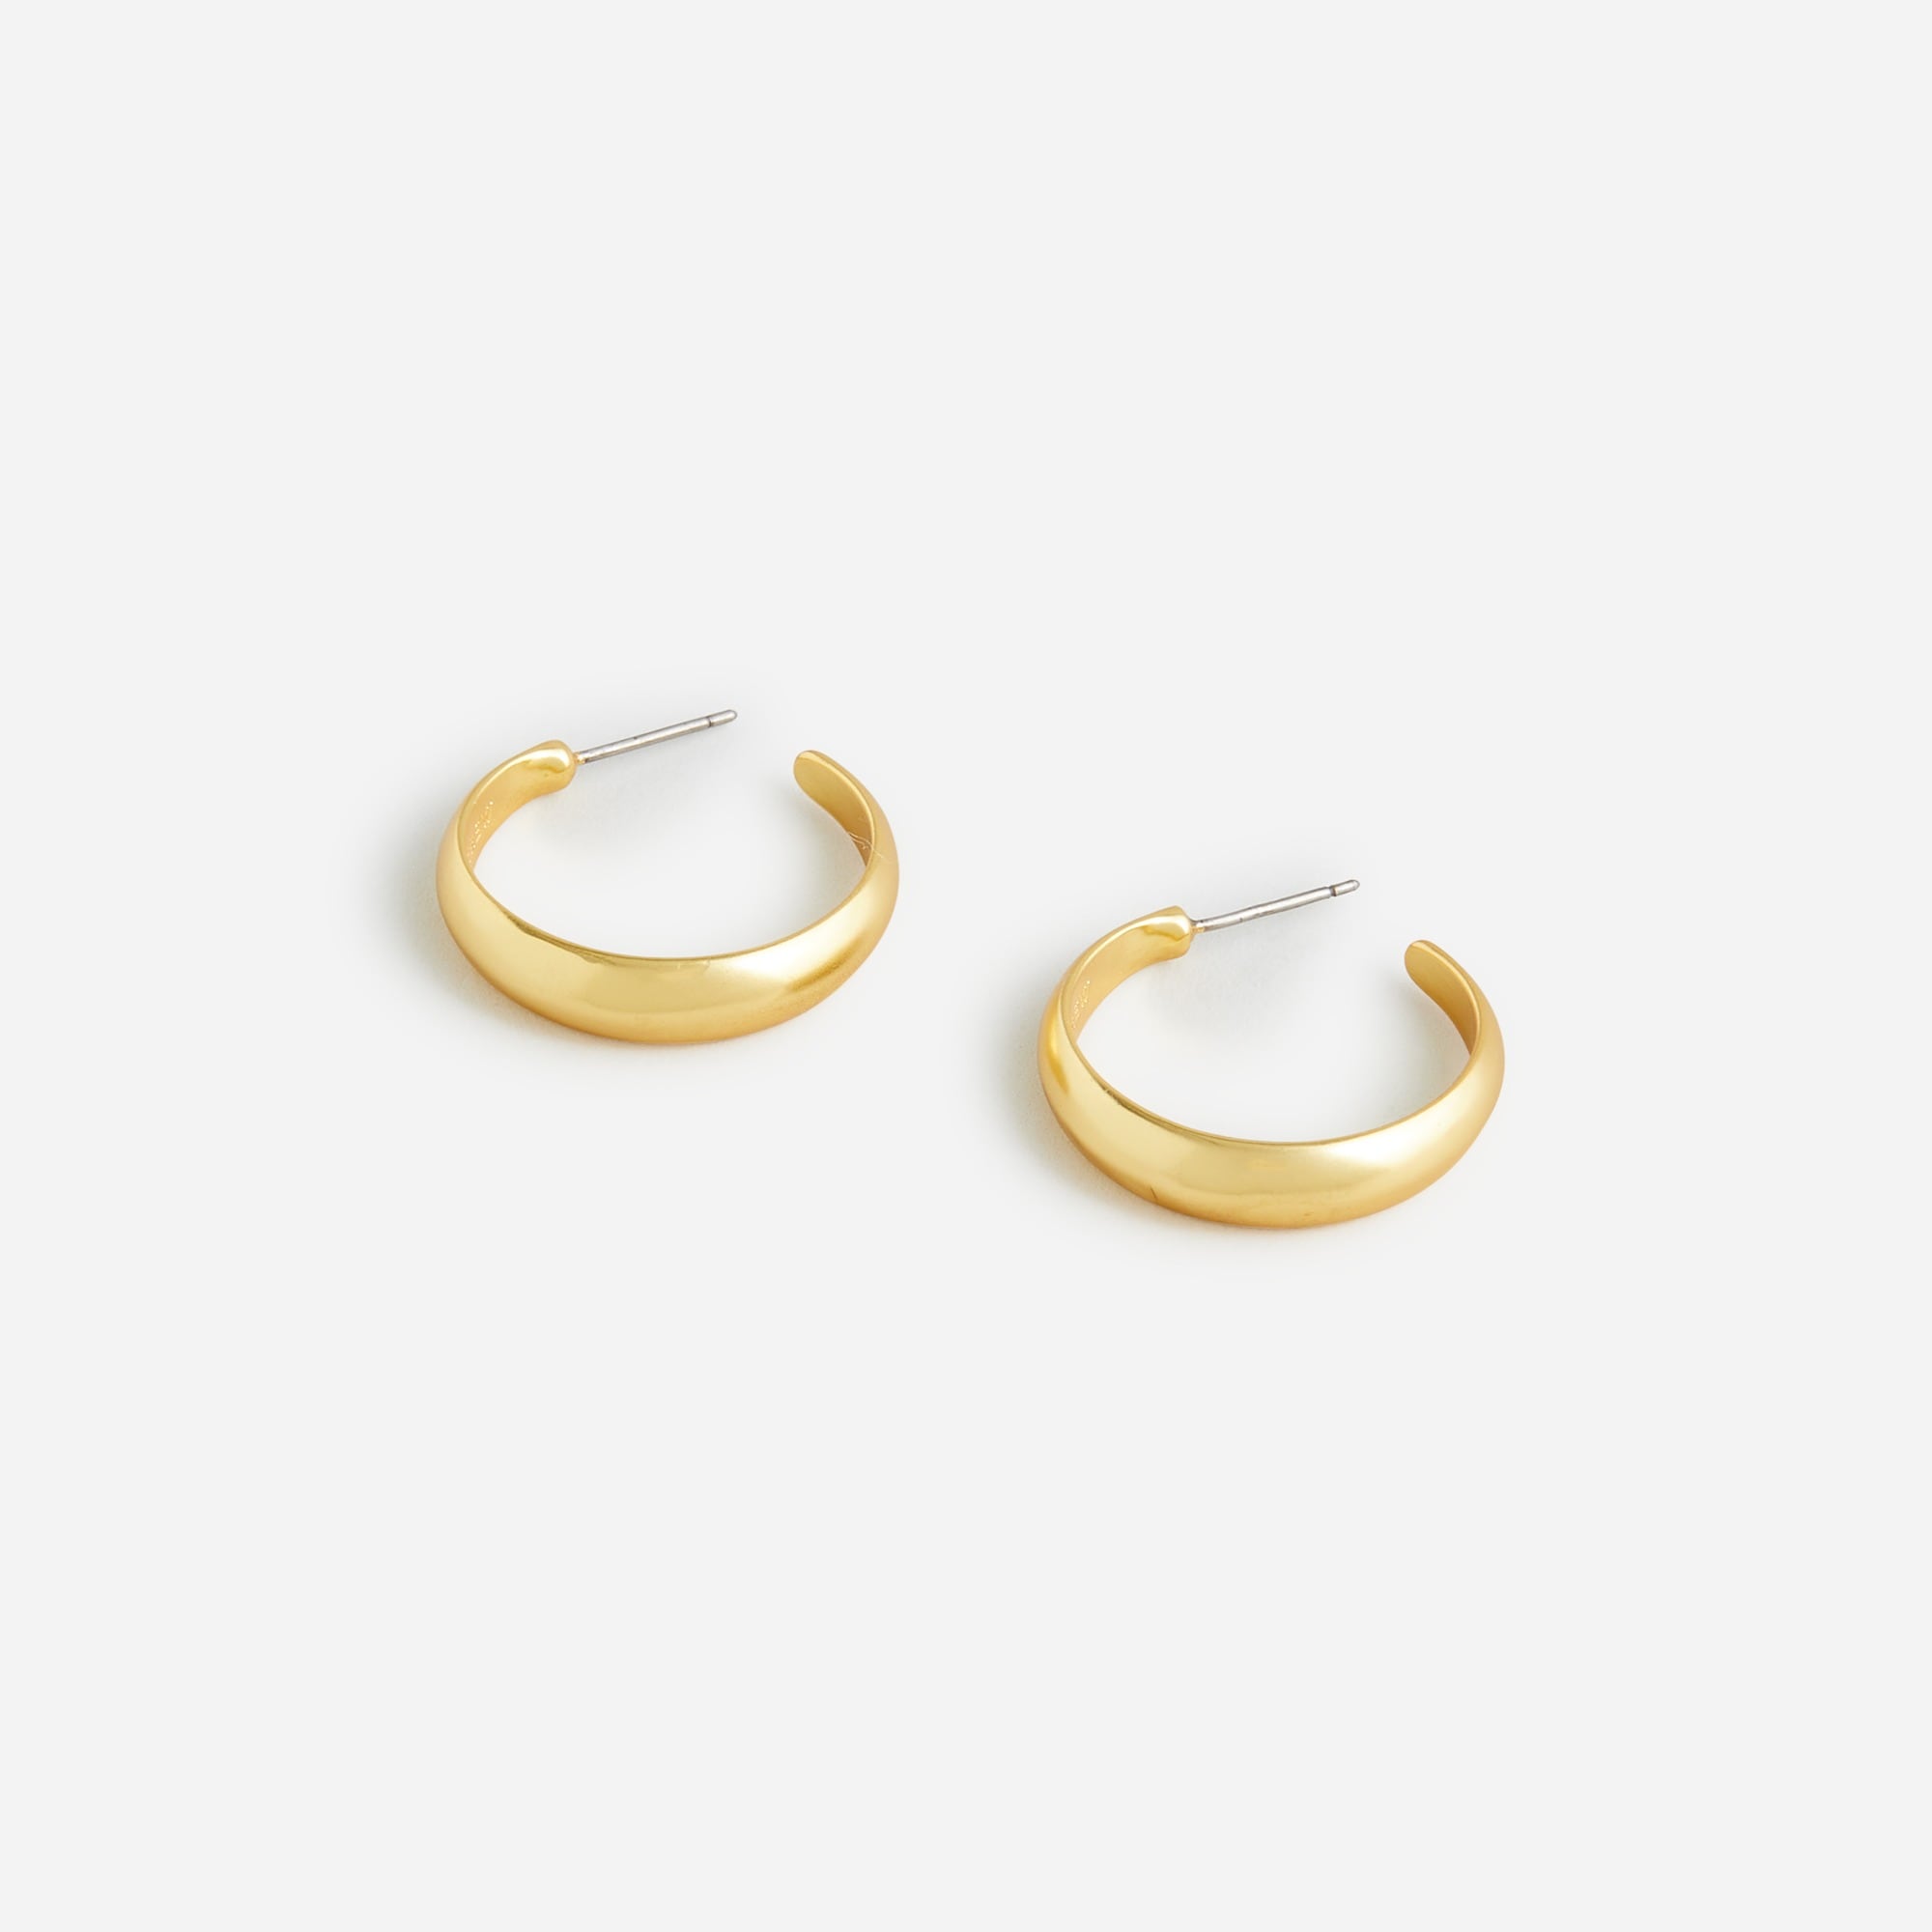  Dainty gold-plated hoop earrings